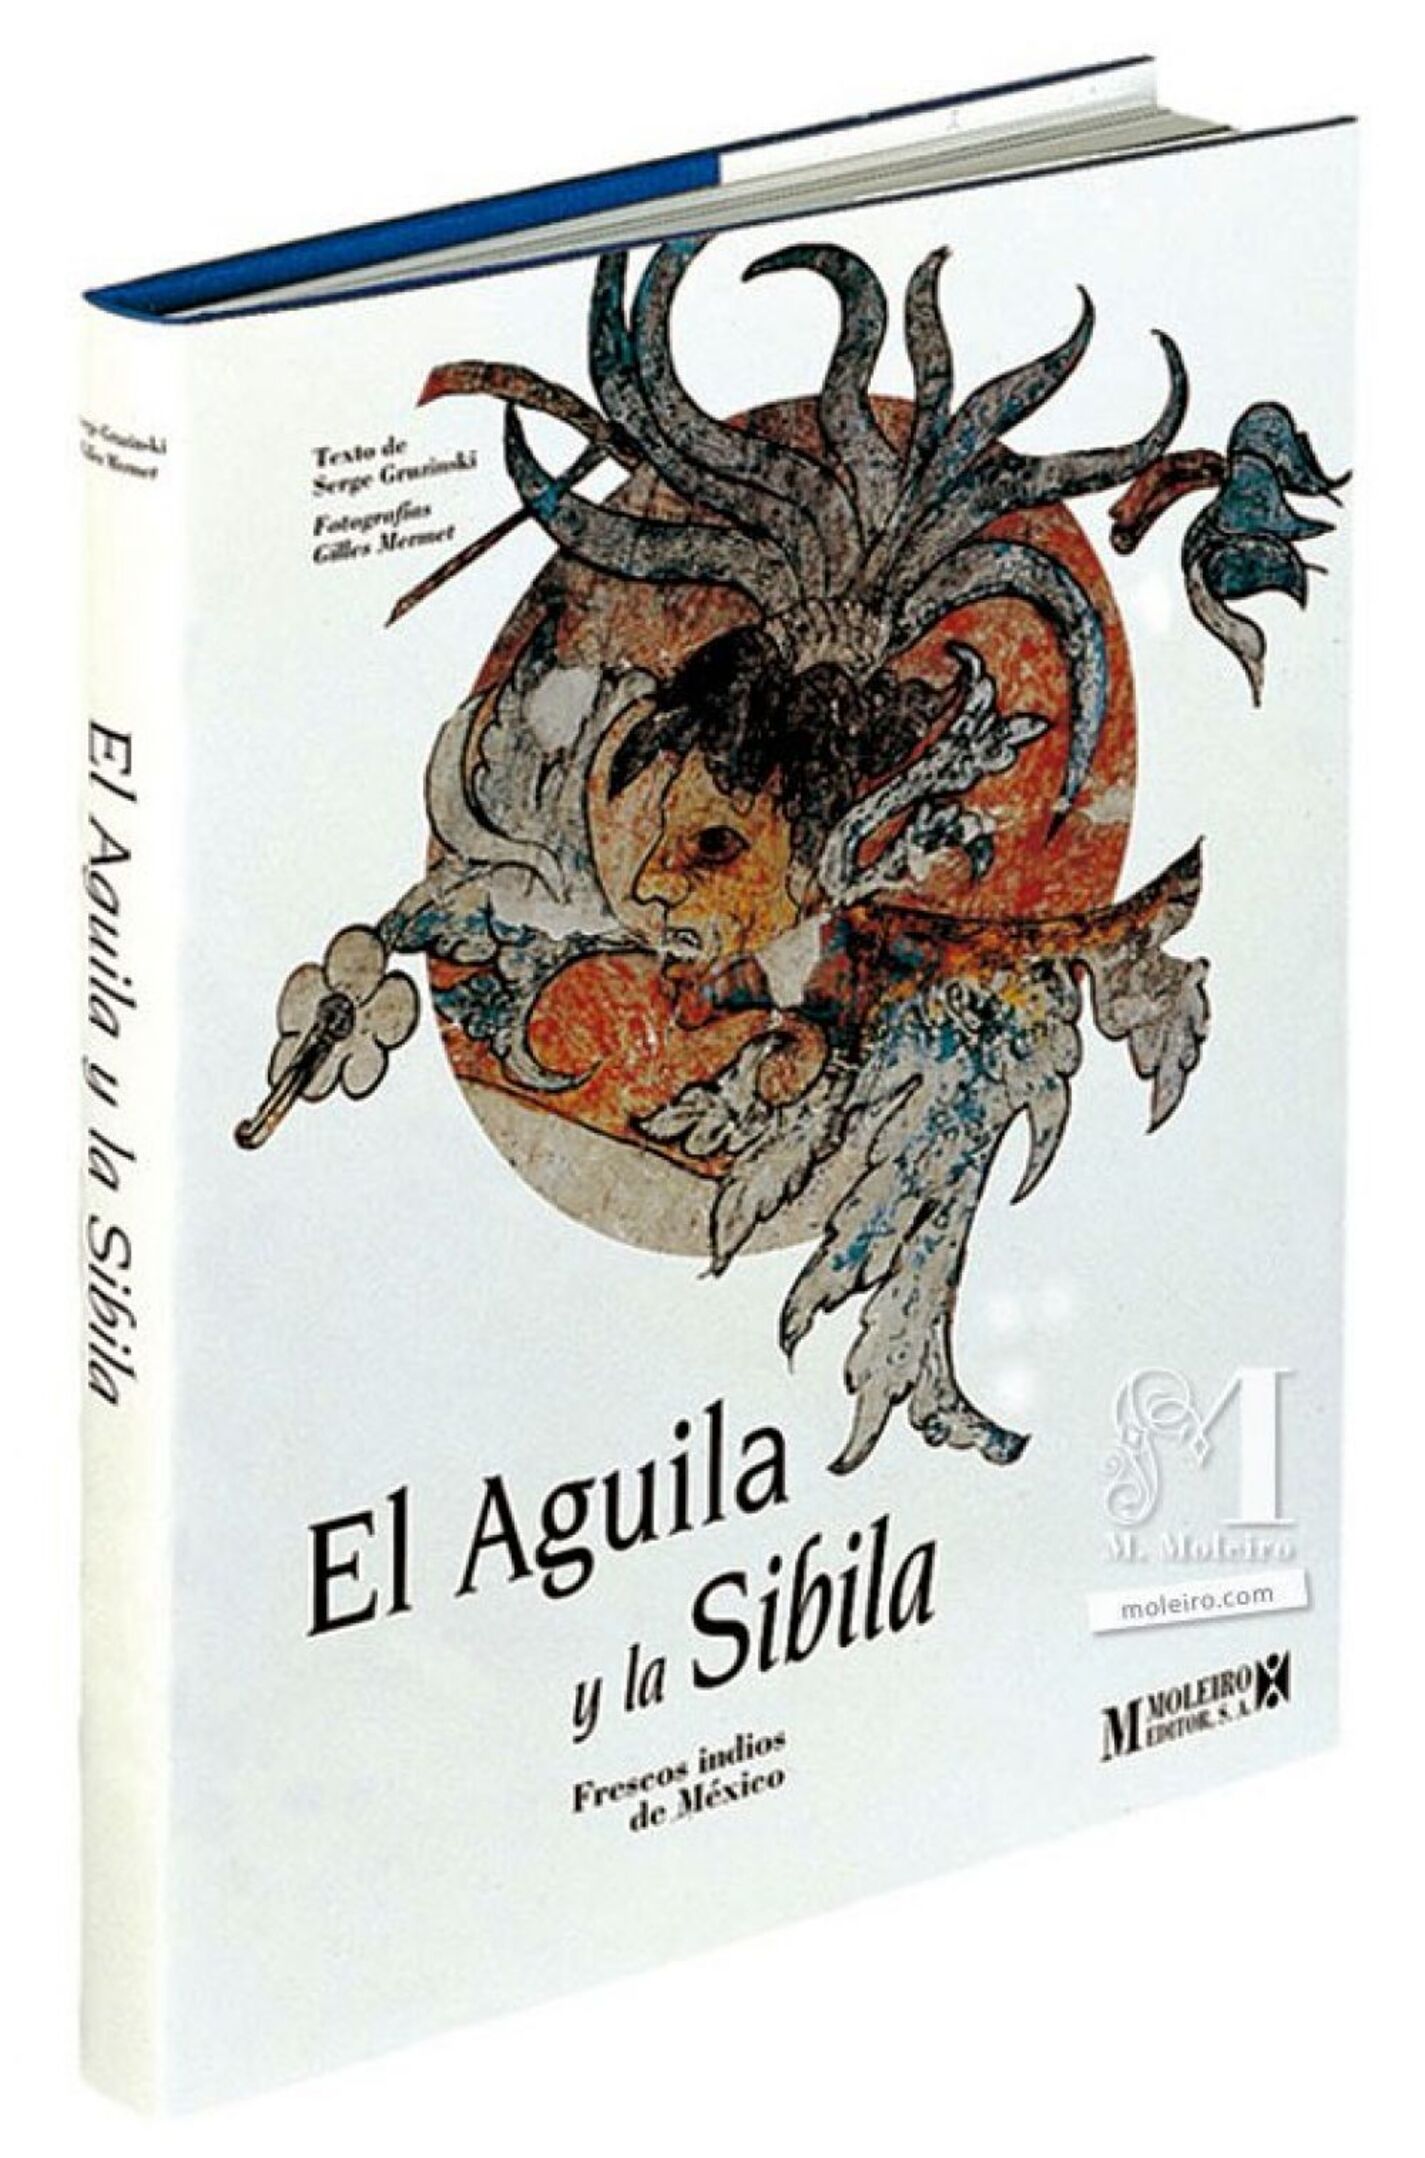 Portada y lomo del libro El Águila y la Sibila, frescos indios de México.